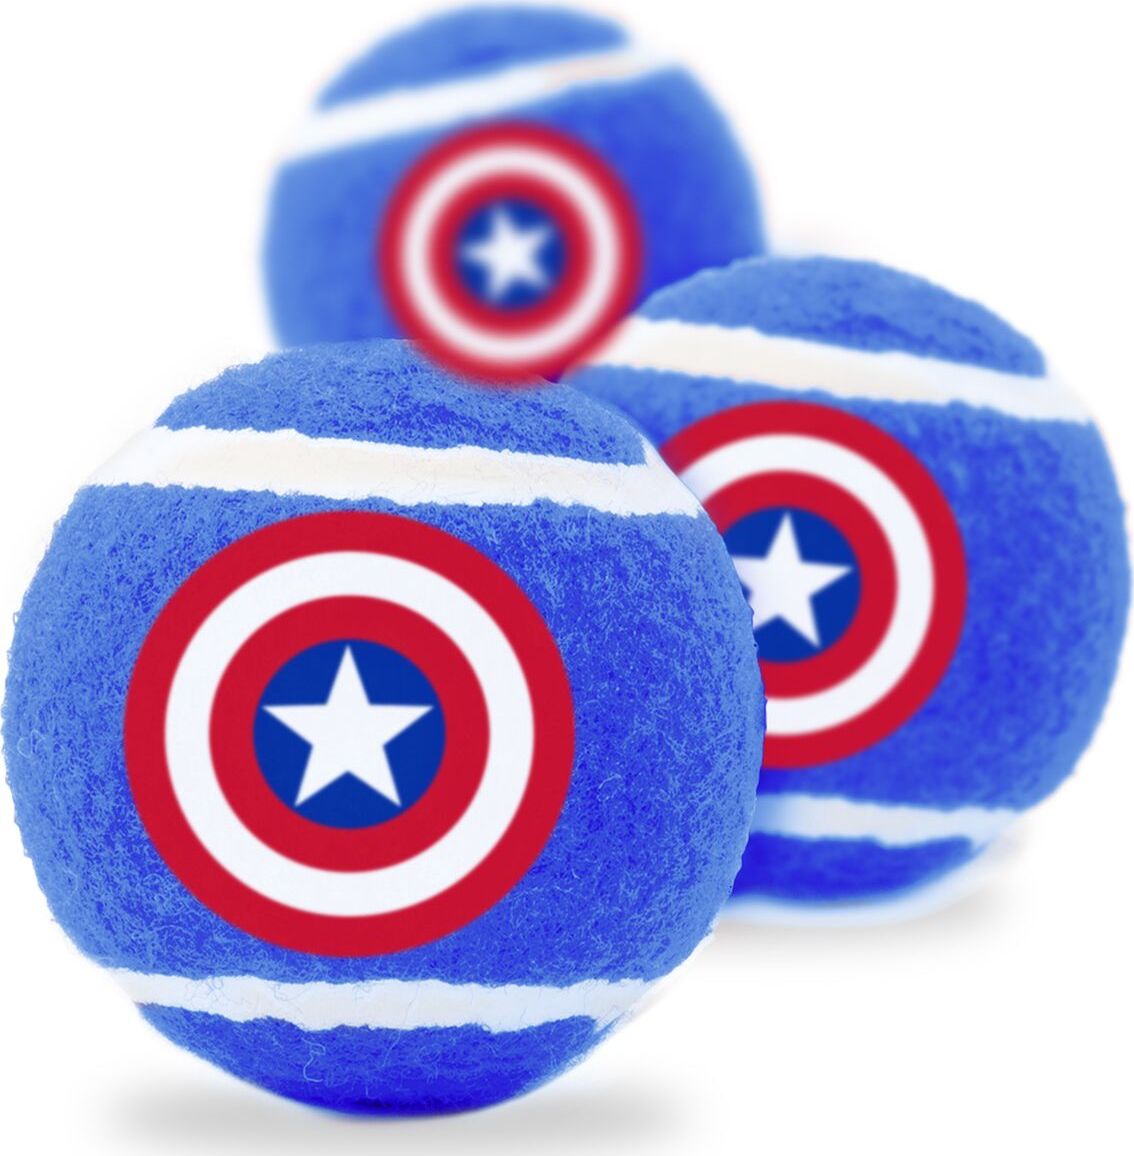 Мячик теннисный для животных Captain America / Капитан Америка Синий (3 шт.) от 1С Интерес